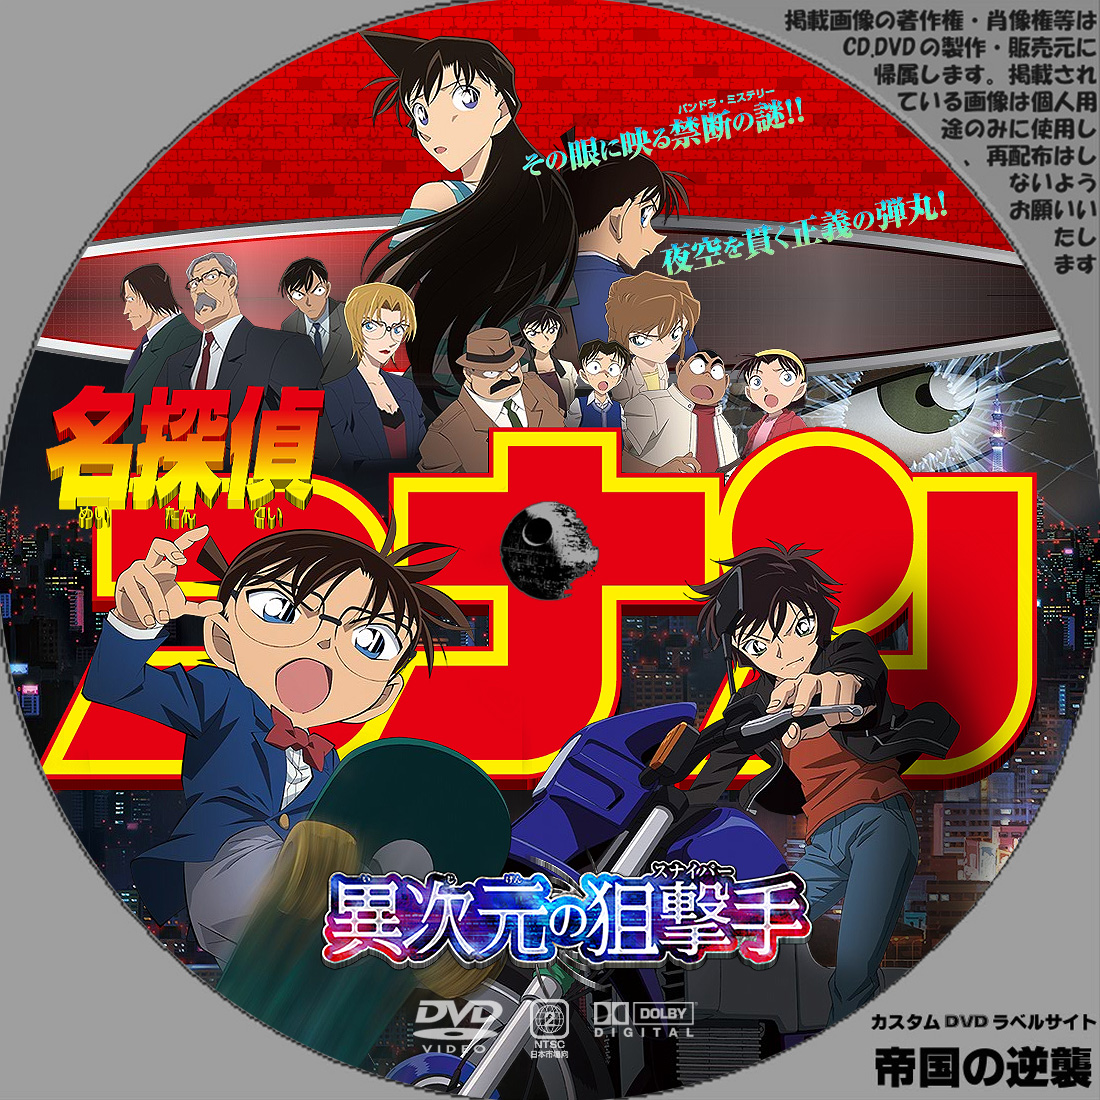 名 探偵 コナン dvd ラベル 壁紙日本で最も人気のある hdd